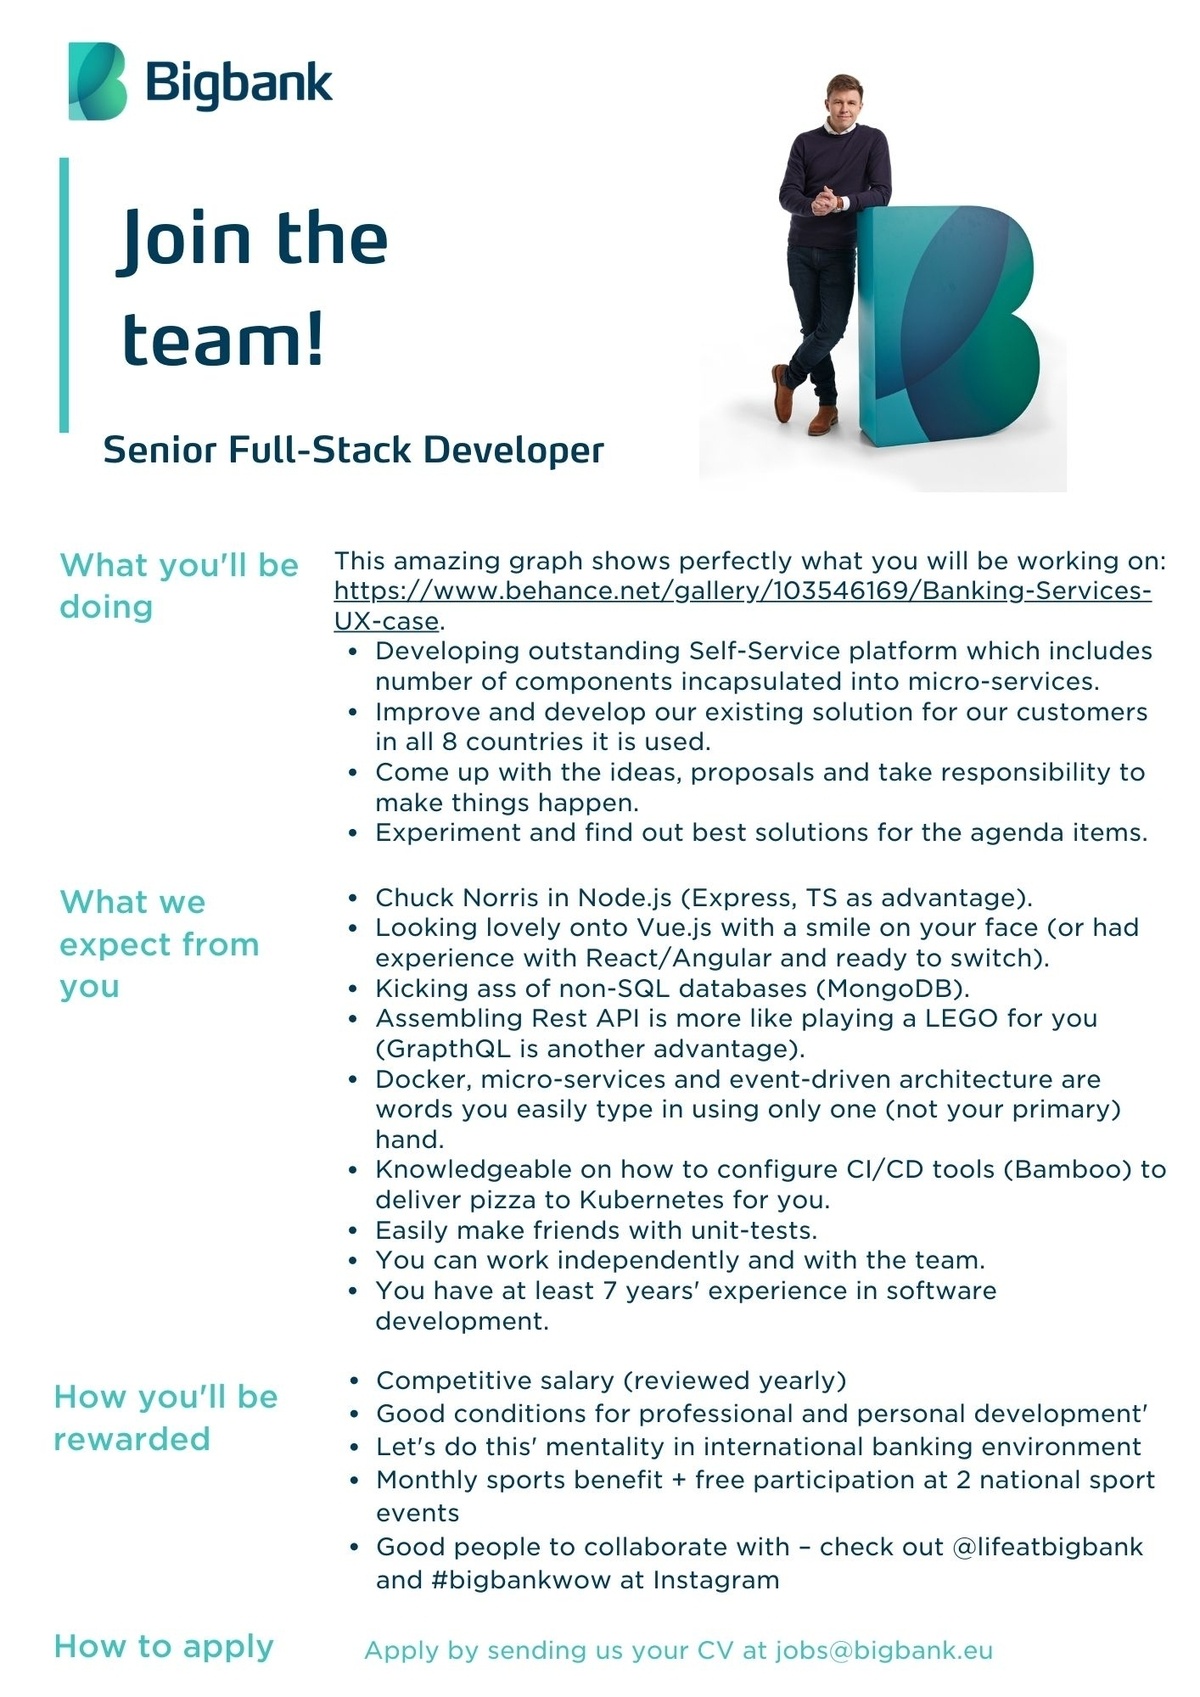 BIGBANK AS Senior Full-Stack Developer